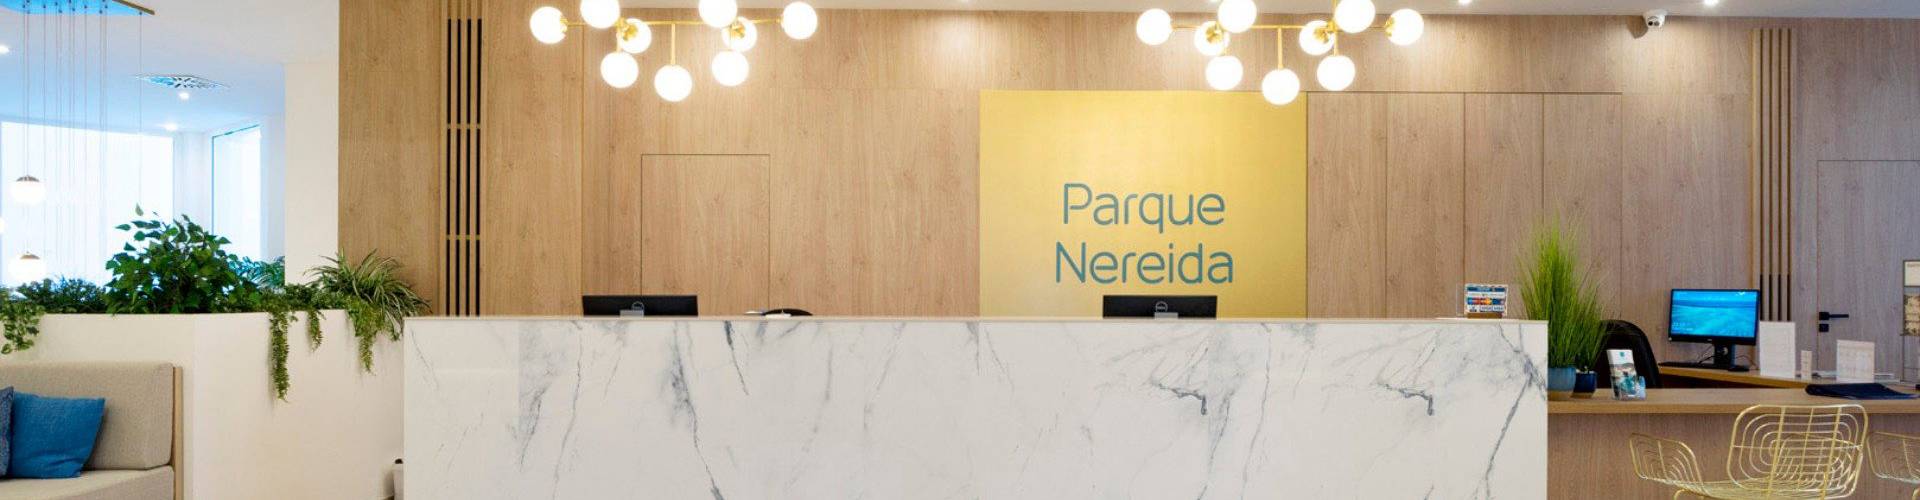 Parque Nereida Suites Hotel - Cala Ratjada - 